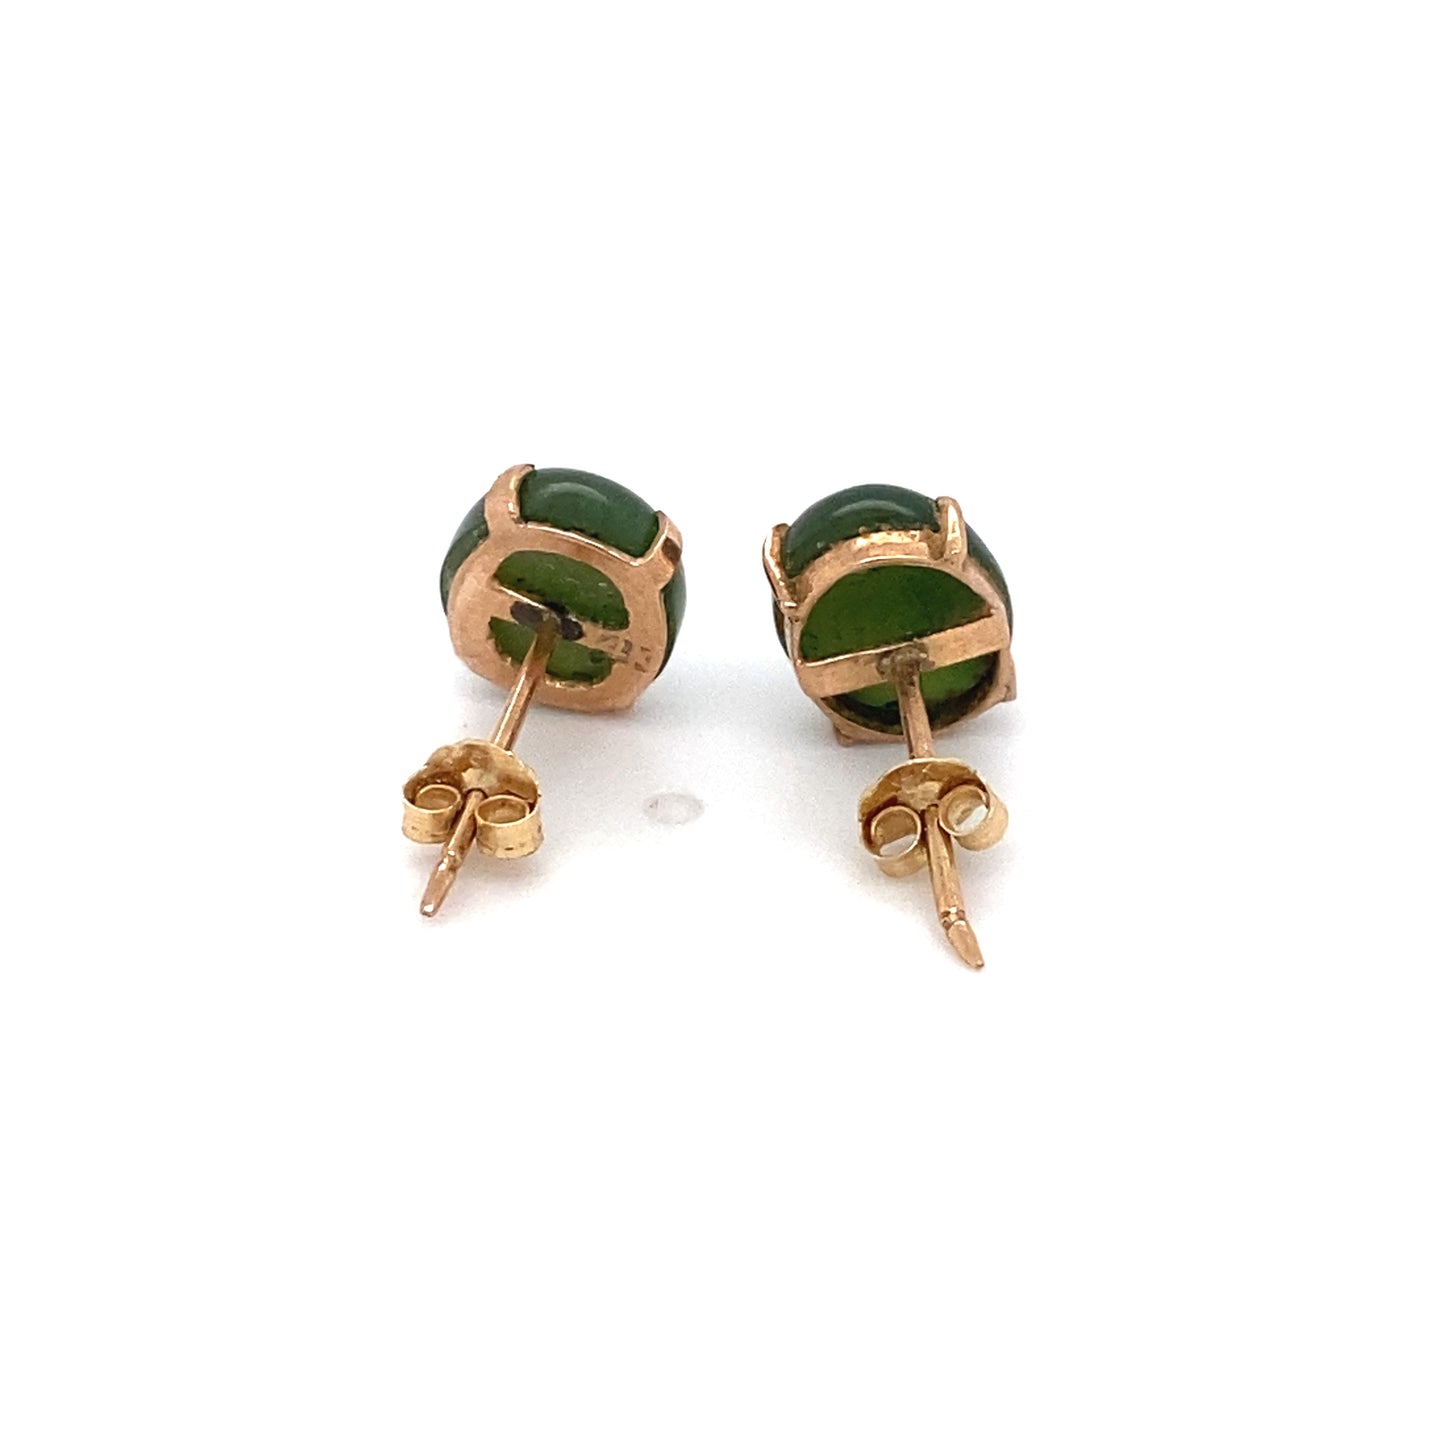 Circa 1960 Oval Jade Stud Earrings in 14 Karat Rose Gold